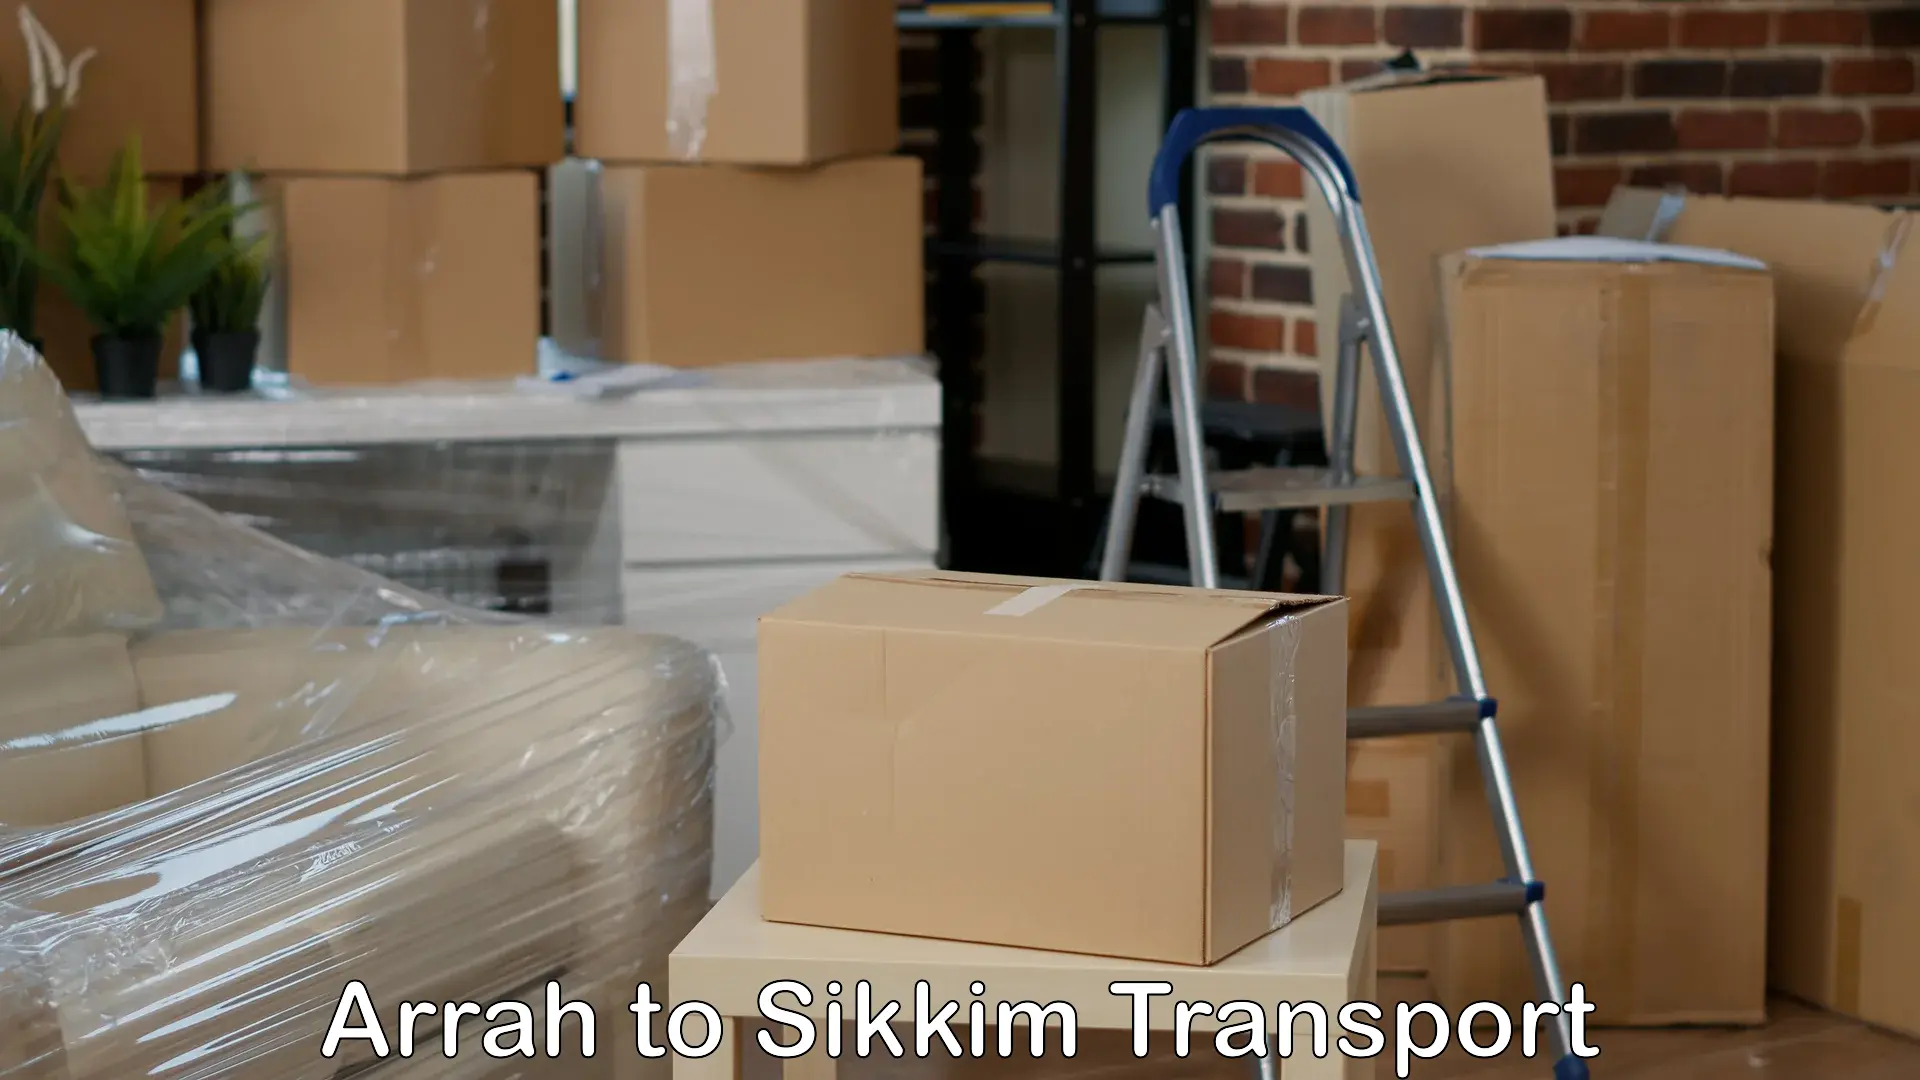 Container transport service Arrah to Mangan